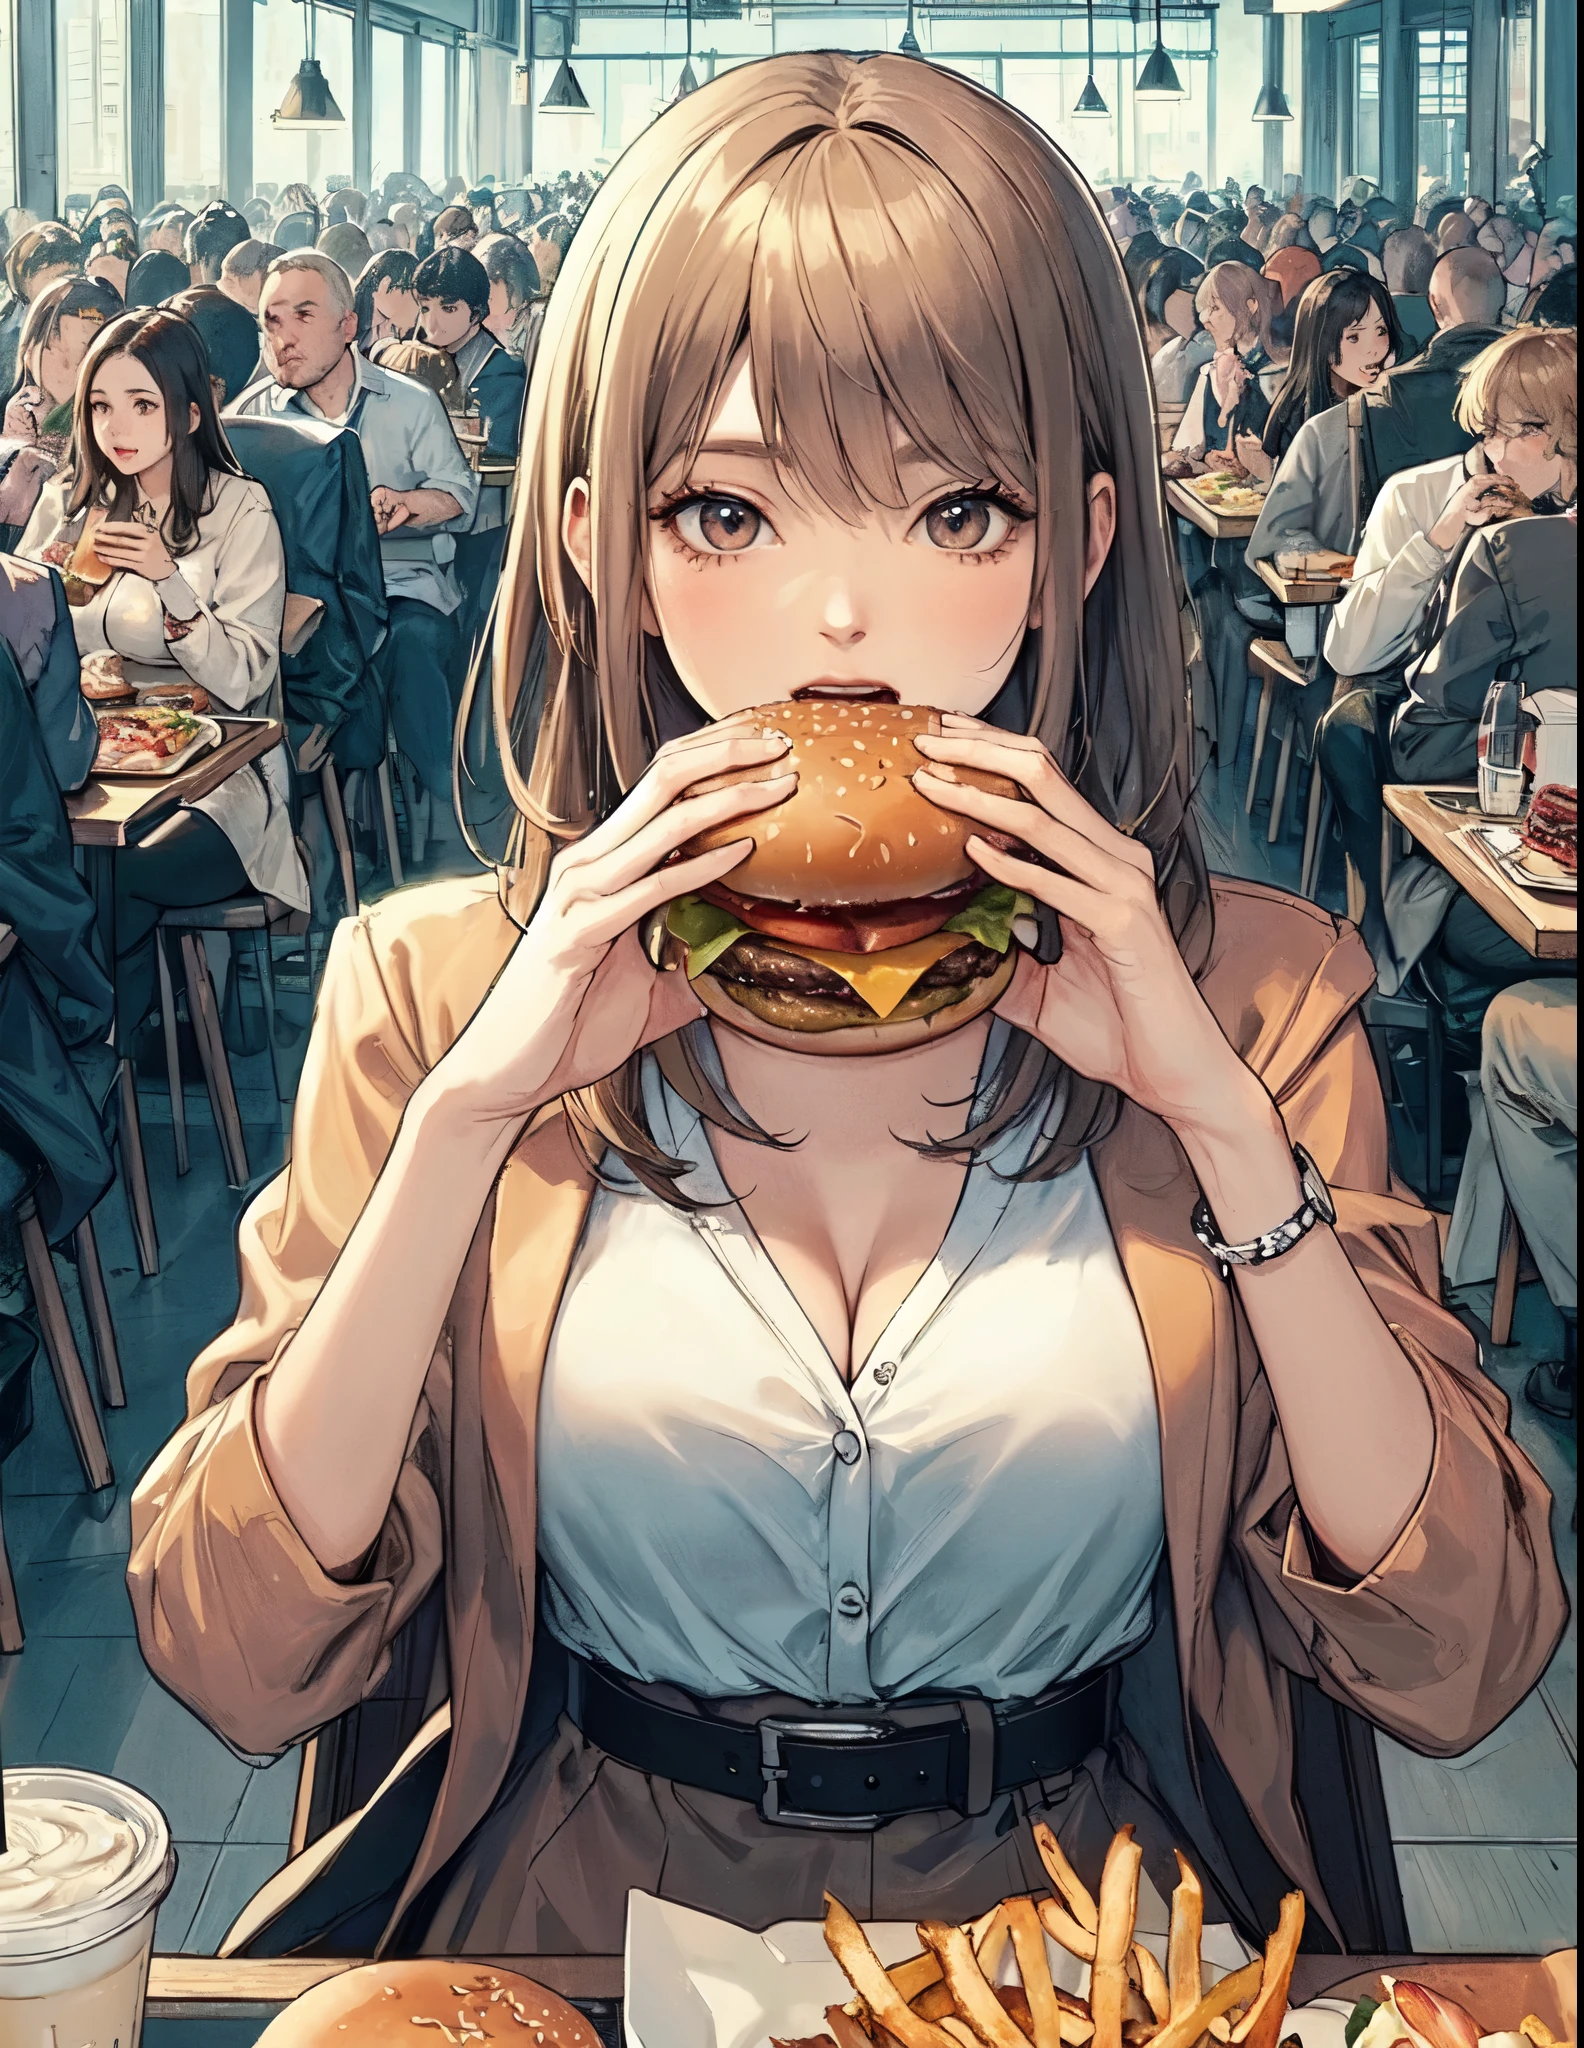 仅限 1 名女士, 坐在桌旁, (拿着汉堡包) 双手, taking a 大的 bite, 时尚装扮, 成熟雌性, /(米色头发/) 刘海, (张开嘴) 大的, (牙齿:0.8), (杰作最佳品质:1.2) 精致插画 细节丰富, large breasts 休息 (大的 hamburger) 休息 (休闲餐厅) 在室内, 快餐, 挤, 详细背景